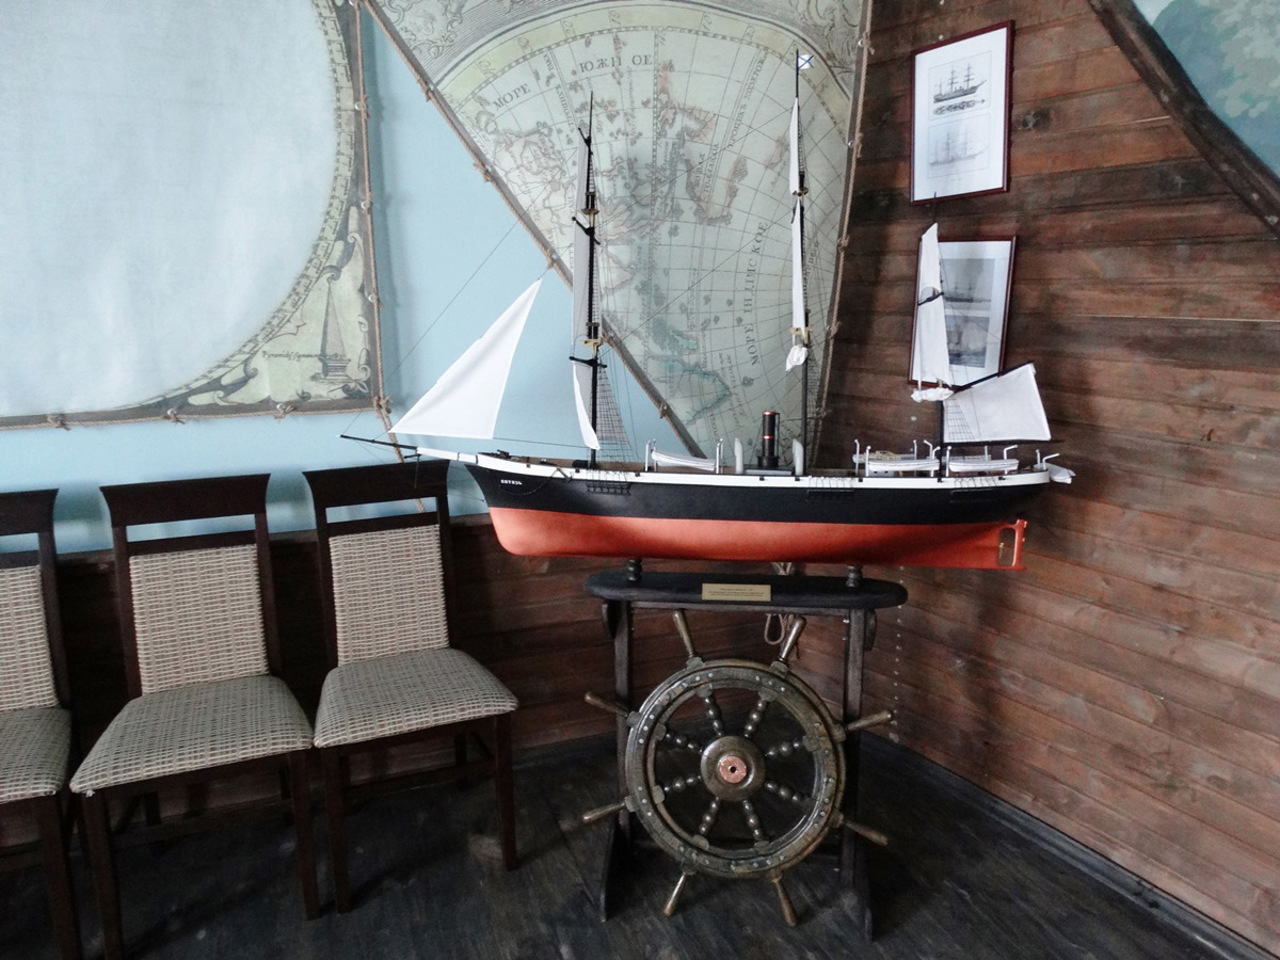 Maklay Sails Museum, Baturyn